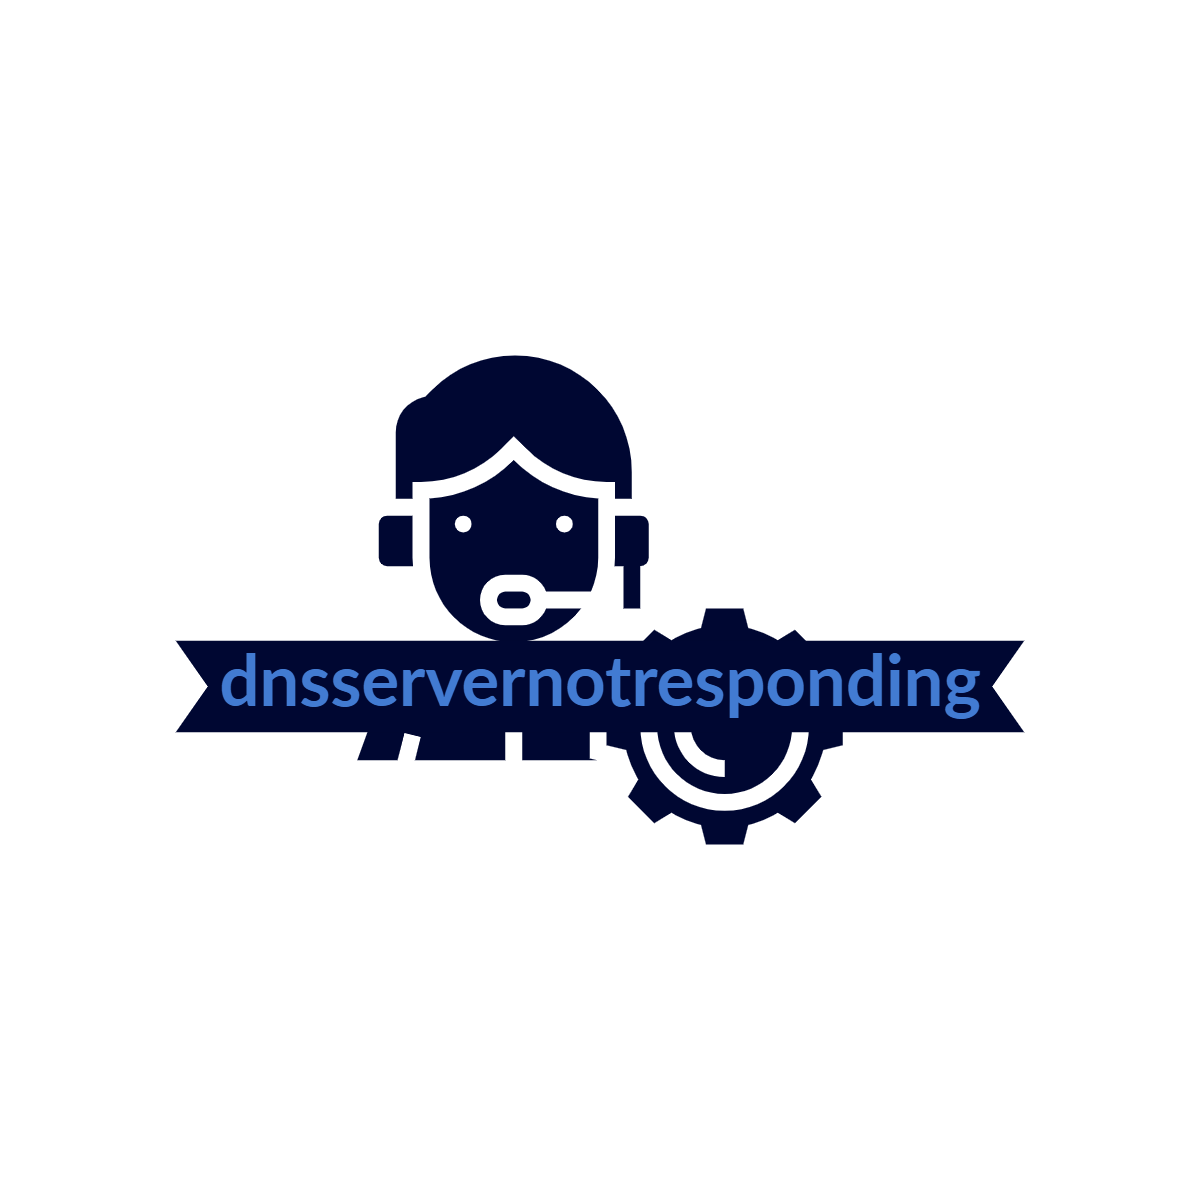 dnsservernotresponding logo